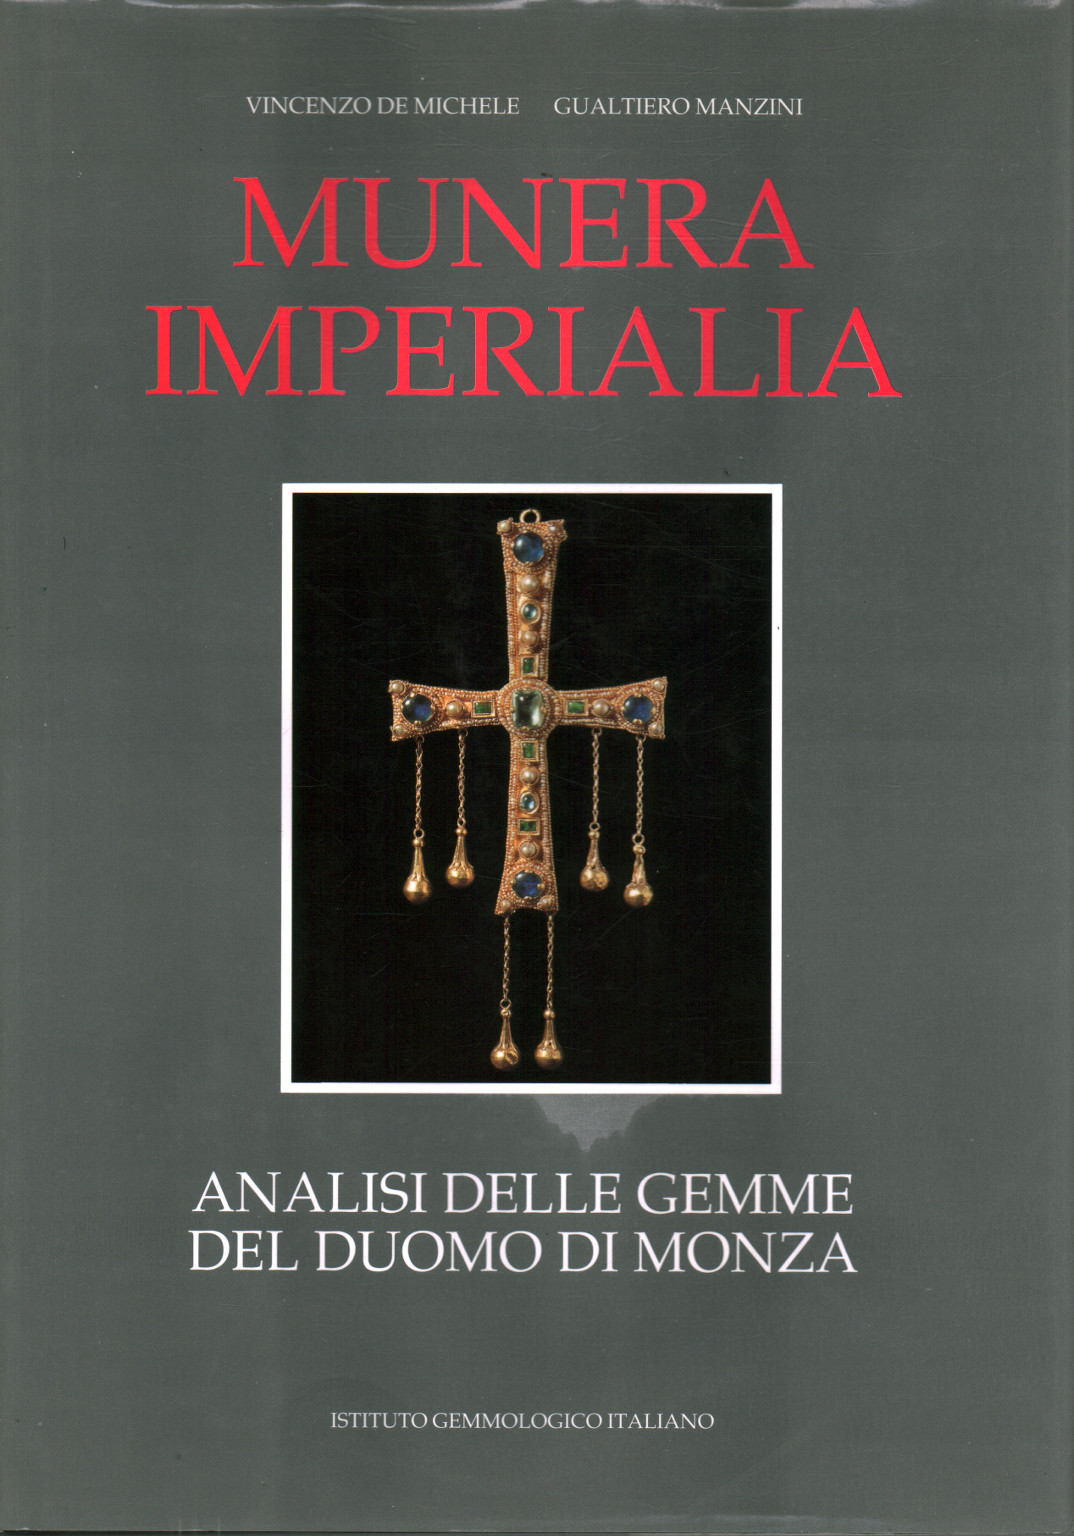 Munera Imperialia, s.a.